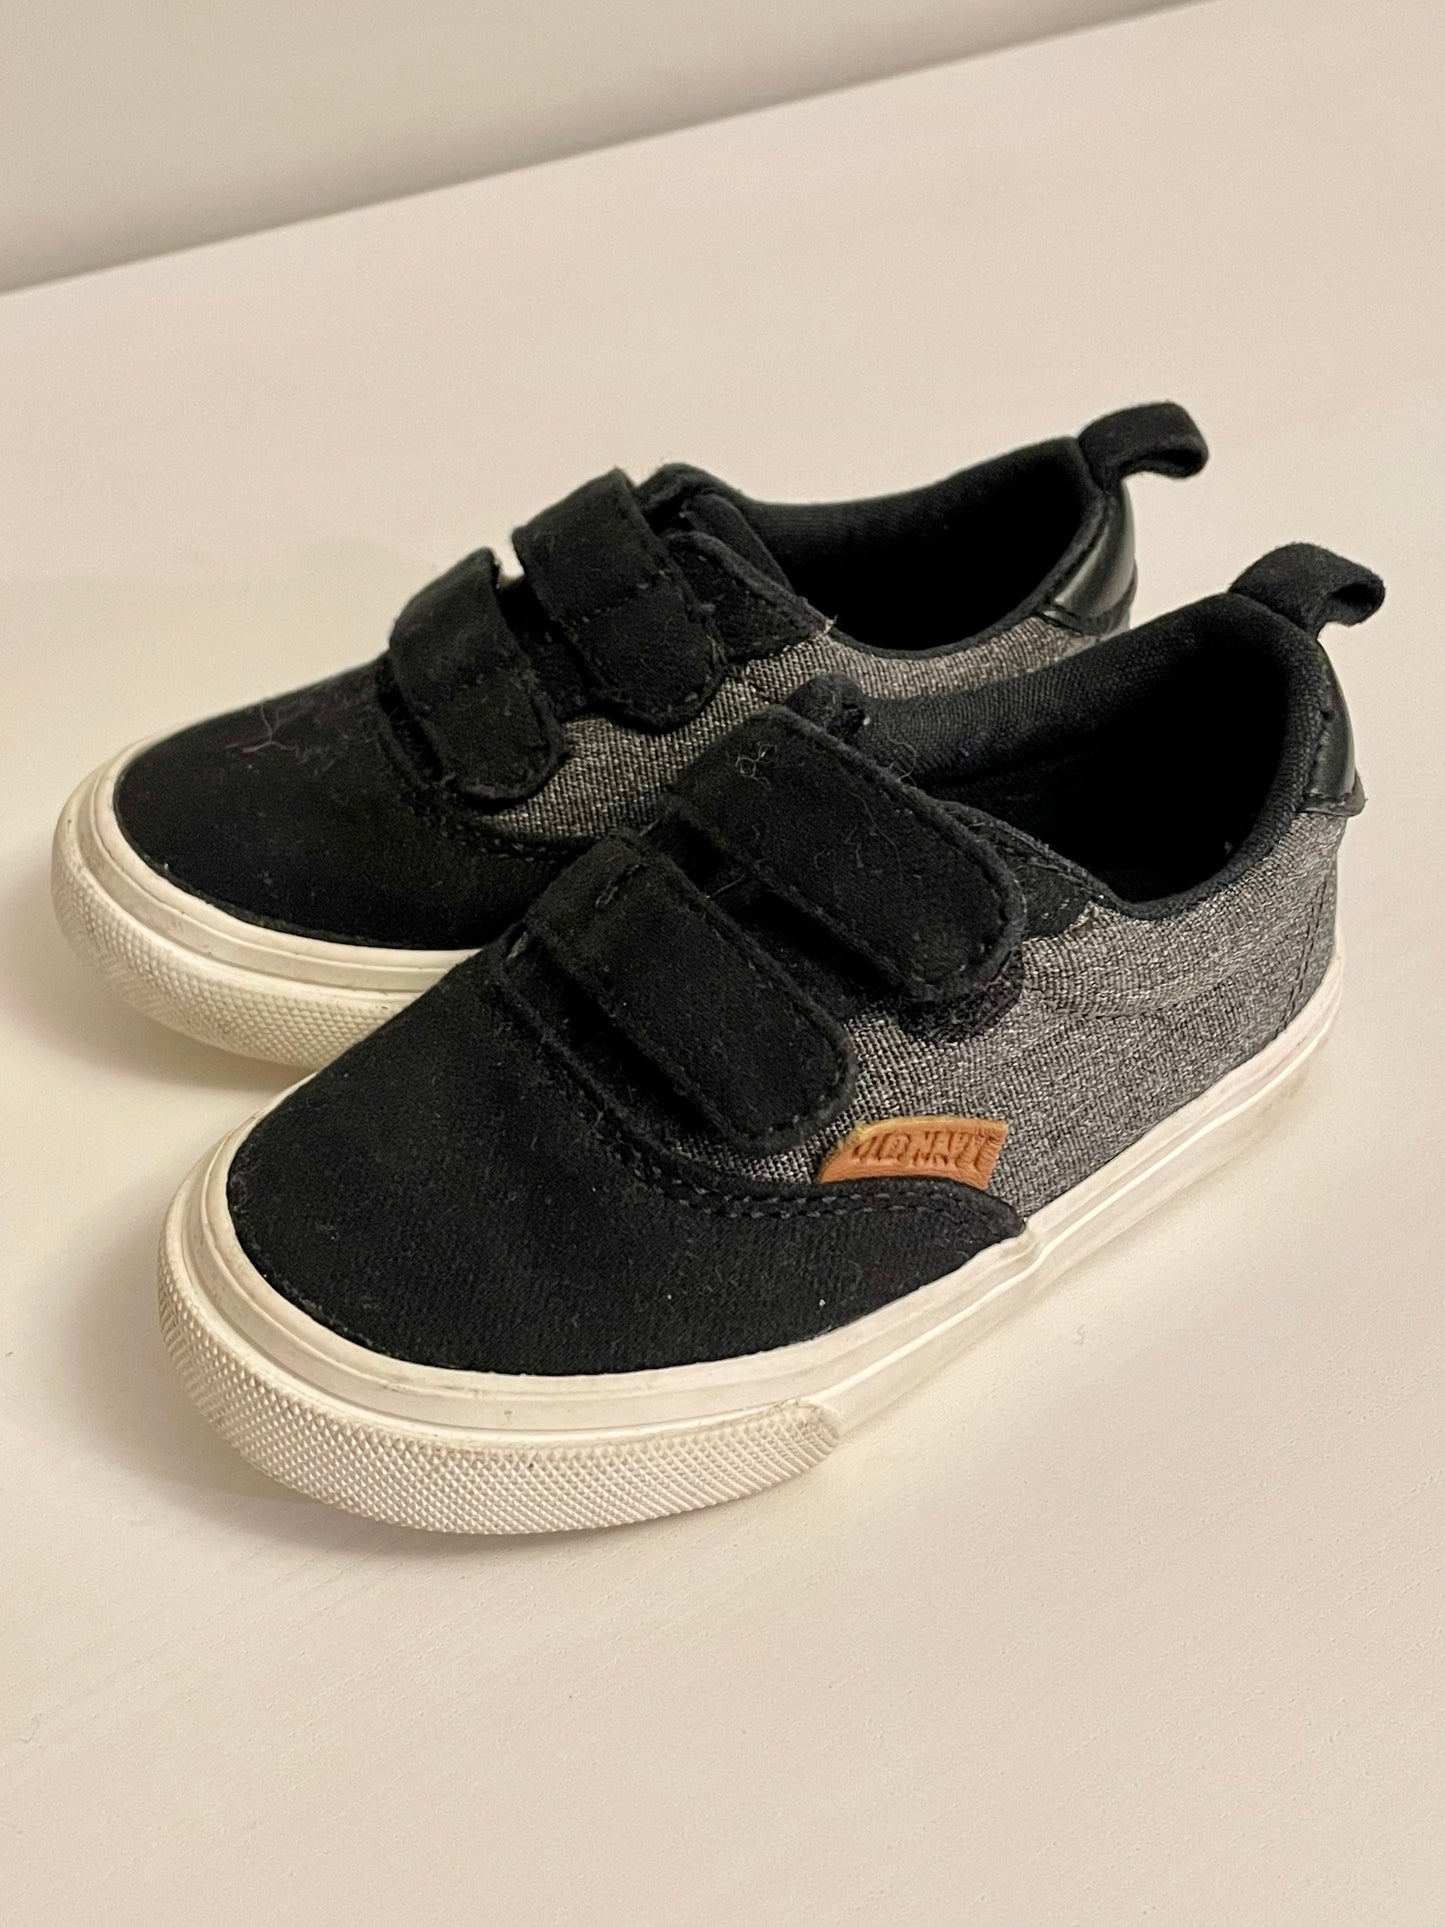 Velcro Sneaker / Size 5 Toddler